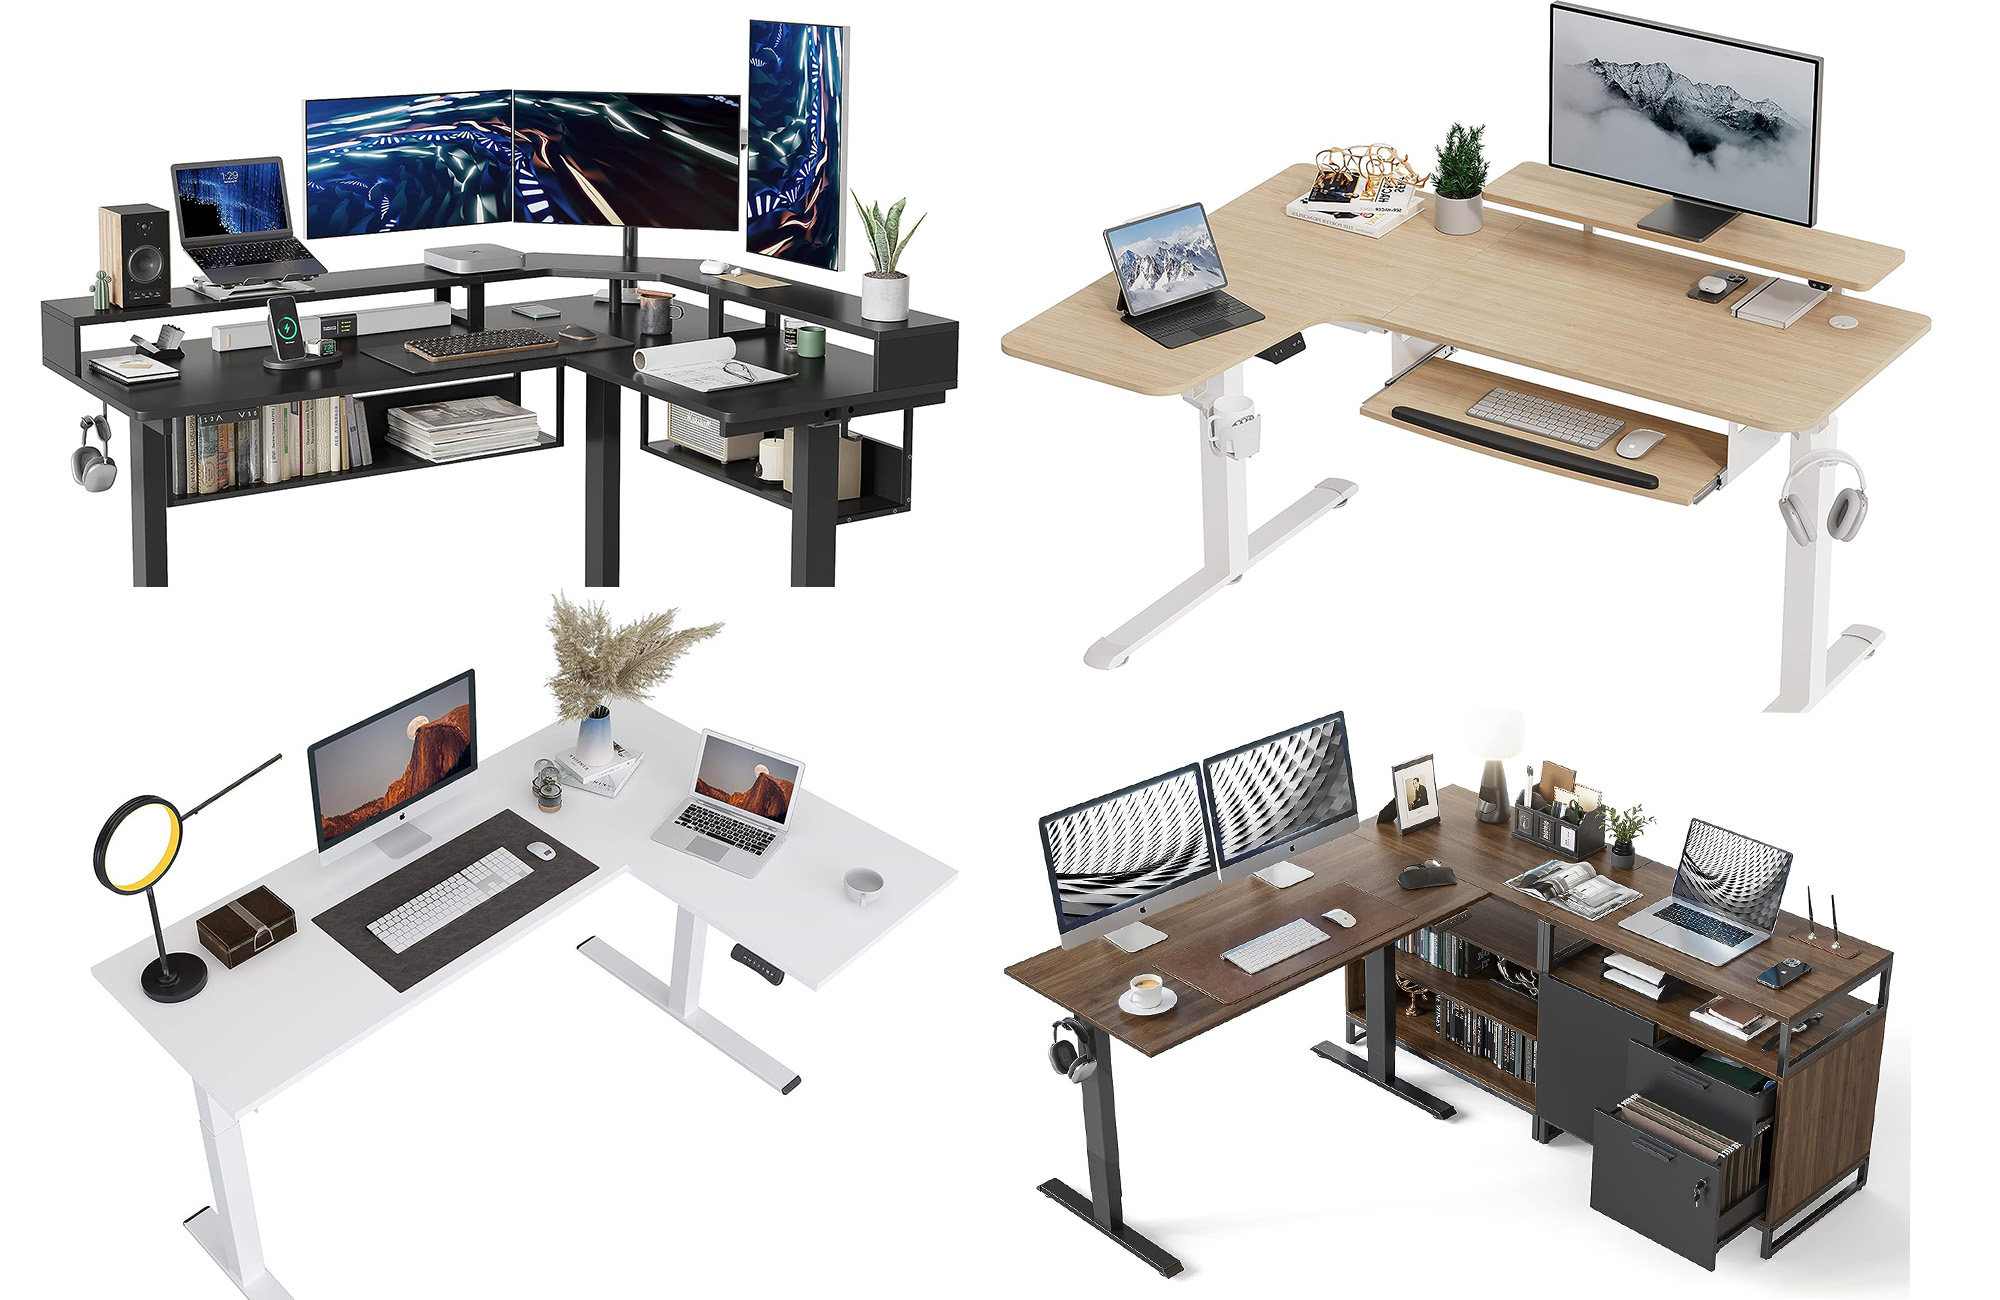 https://www.popsci.com/uploads/2022/02/02/best-l-shaped-desks.jpg?auto=webp&width=1440&height=936